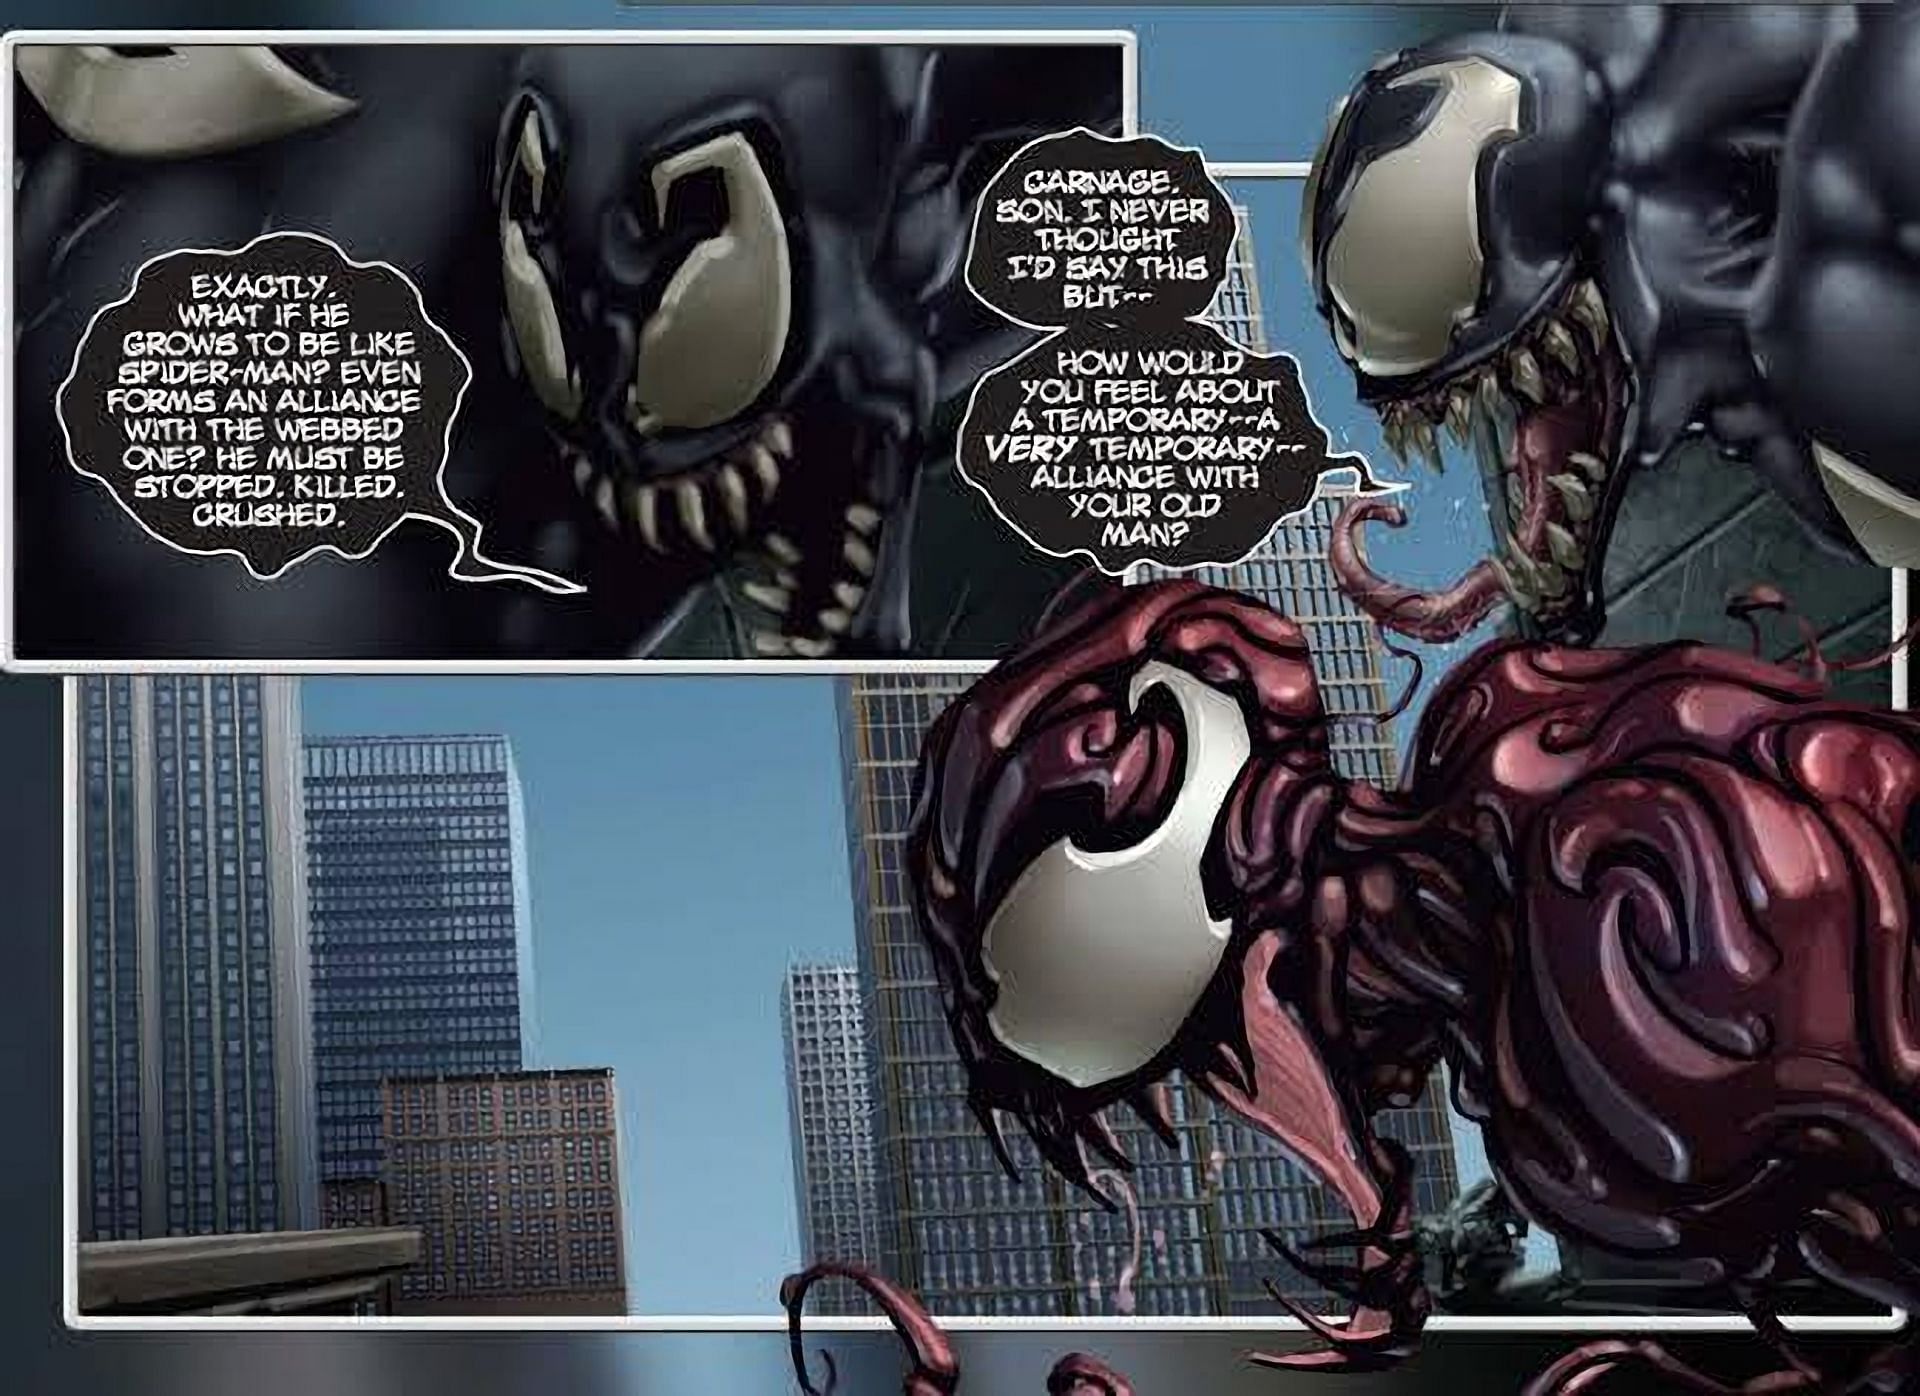 Venom and Carnage (Image via Marvel Comics)